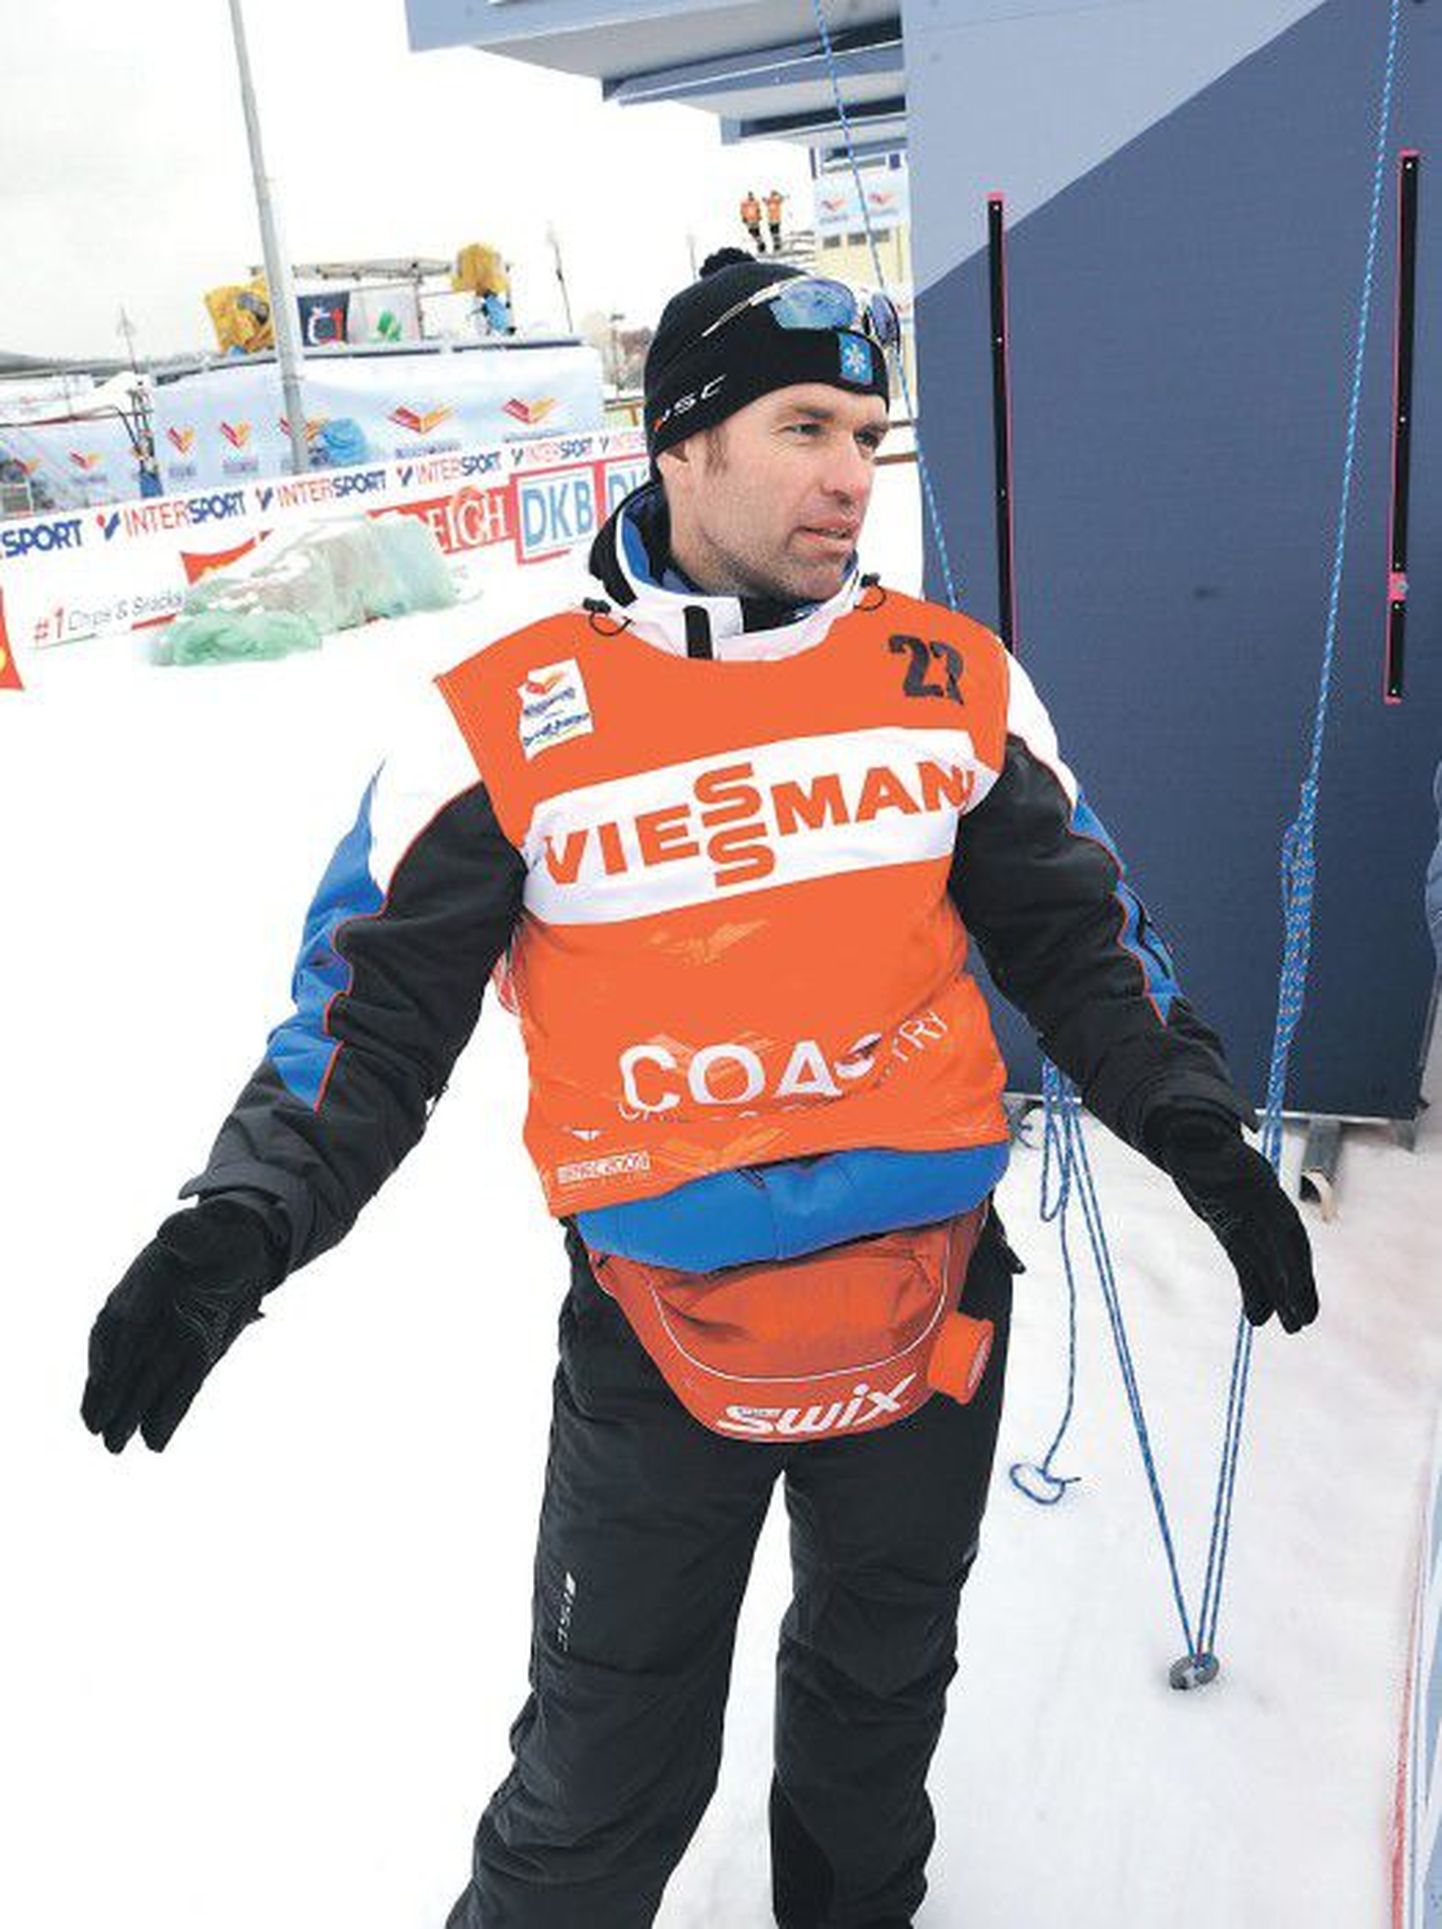 Тренер эстонских спринтеров норвежец Бьорн Кристиансен не против и далее тренировать эстонских спортсменов, однако продолжит ли он работу на своем посту, пока неясно.